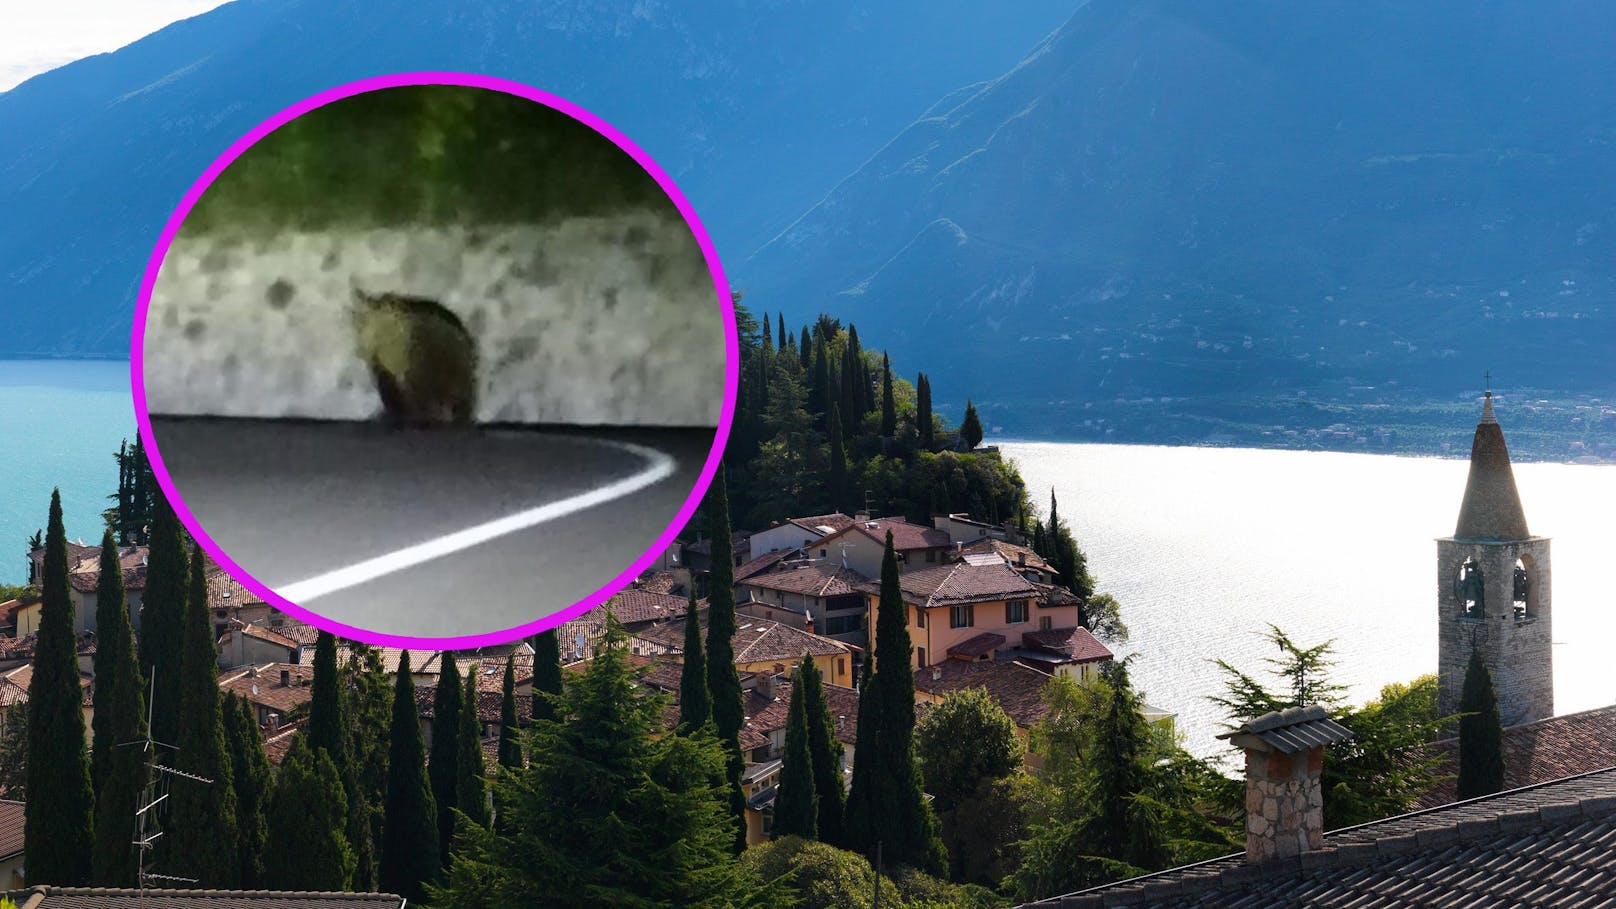 Bär spaziert durch Gardasee-Dorf – Mann macht Foto